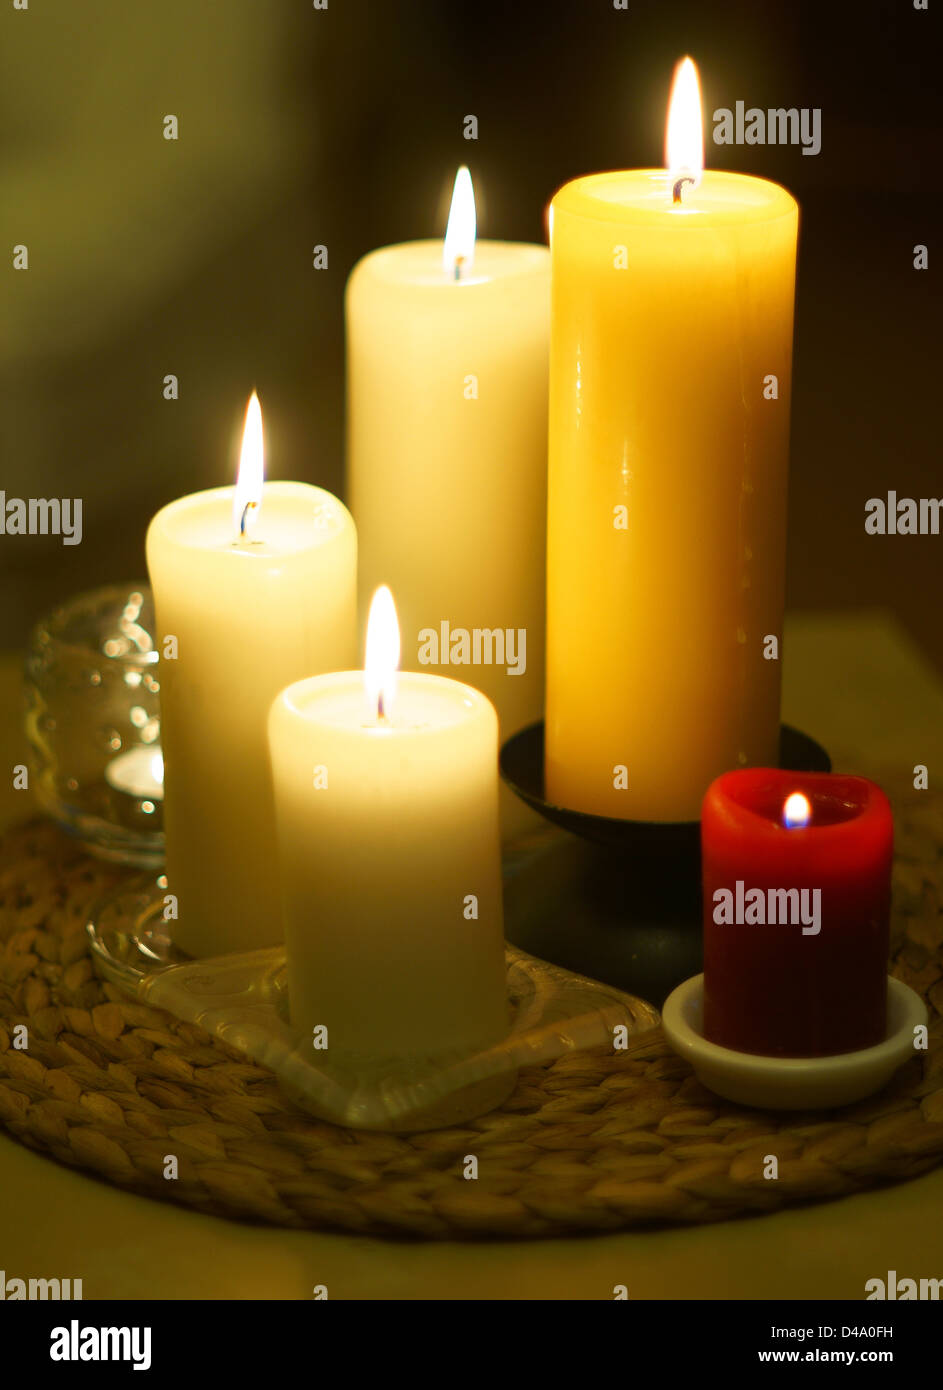 Kerzen brennen wohnliches angenehmes warmes Licht Stockfoto